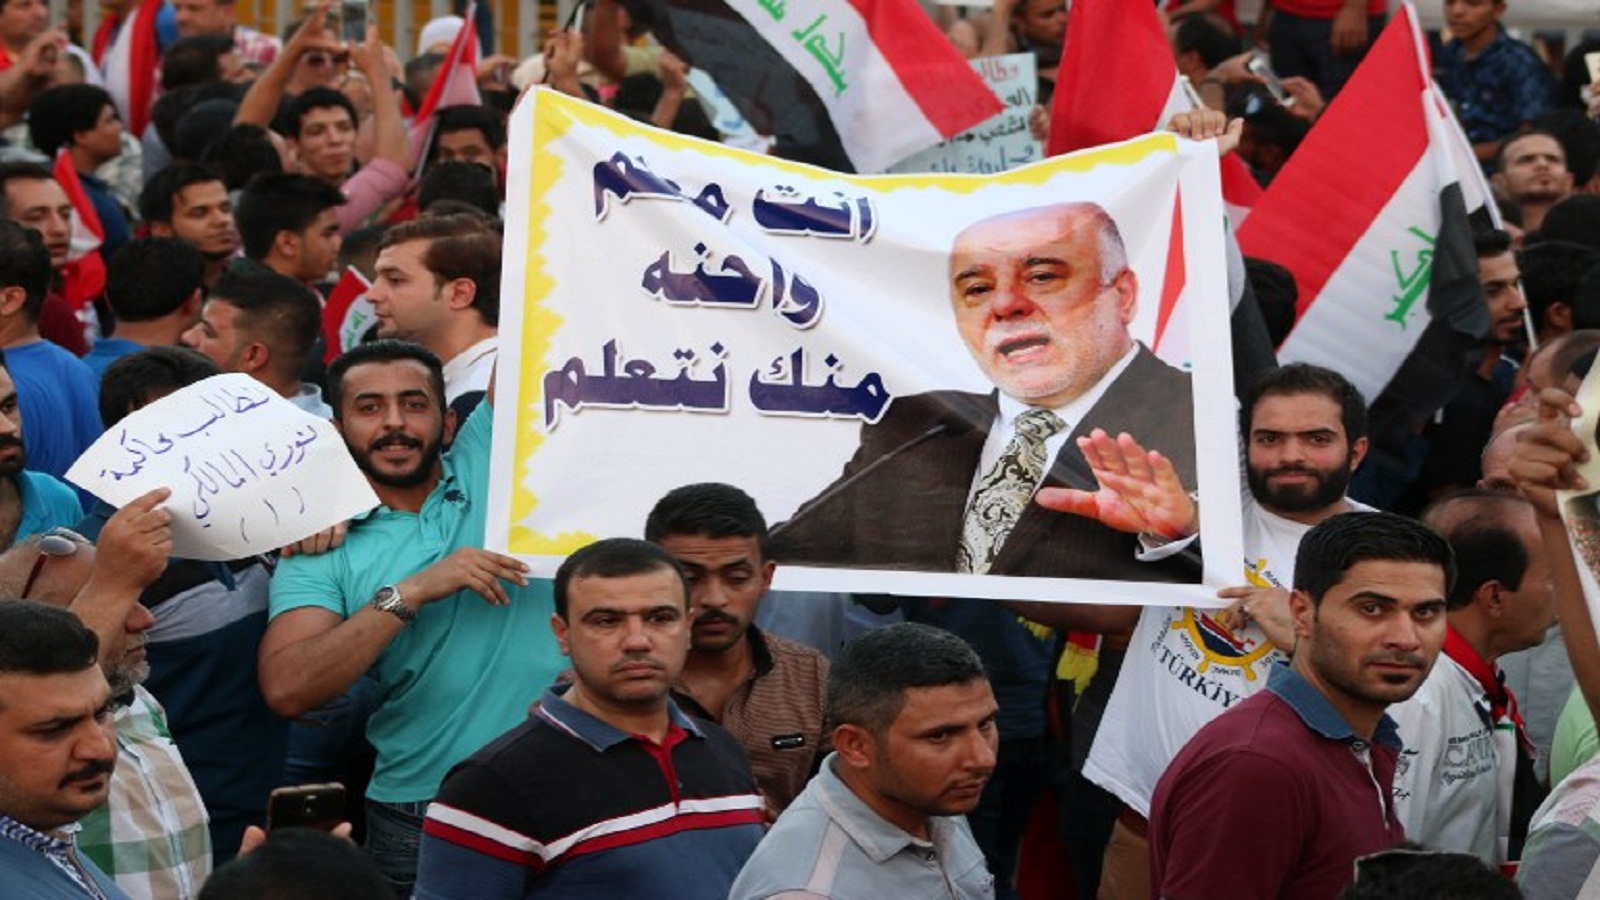 العراق: احتجاجات مطلبية تحولت صراعاً داخل بيت السلطة